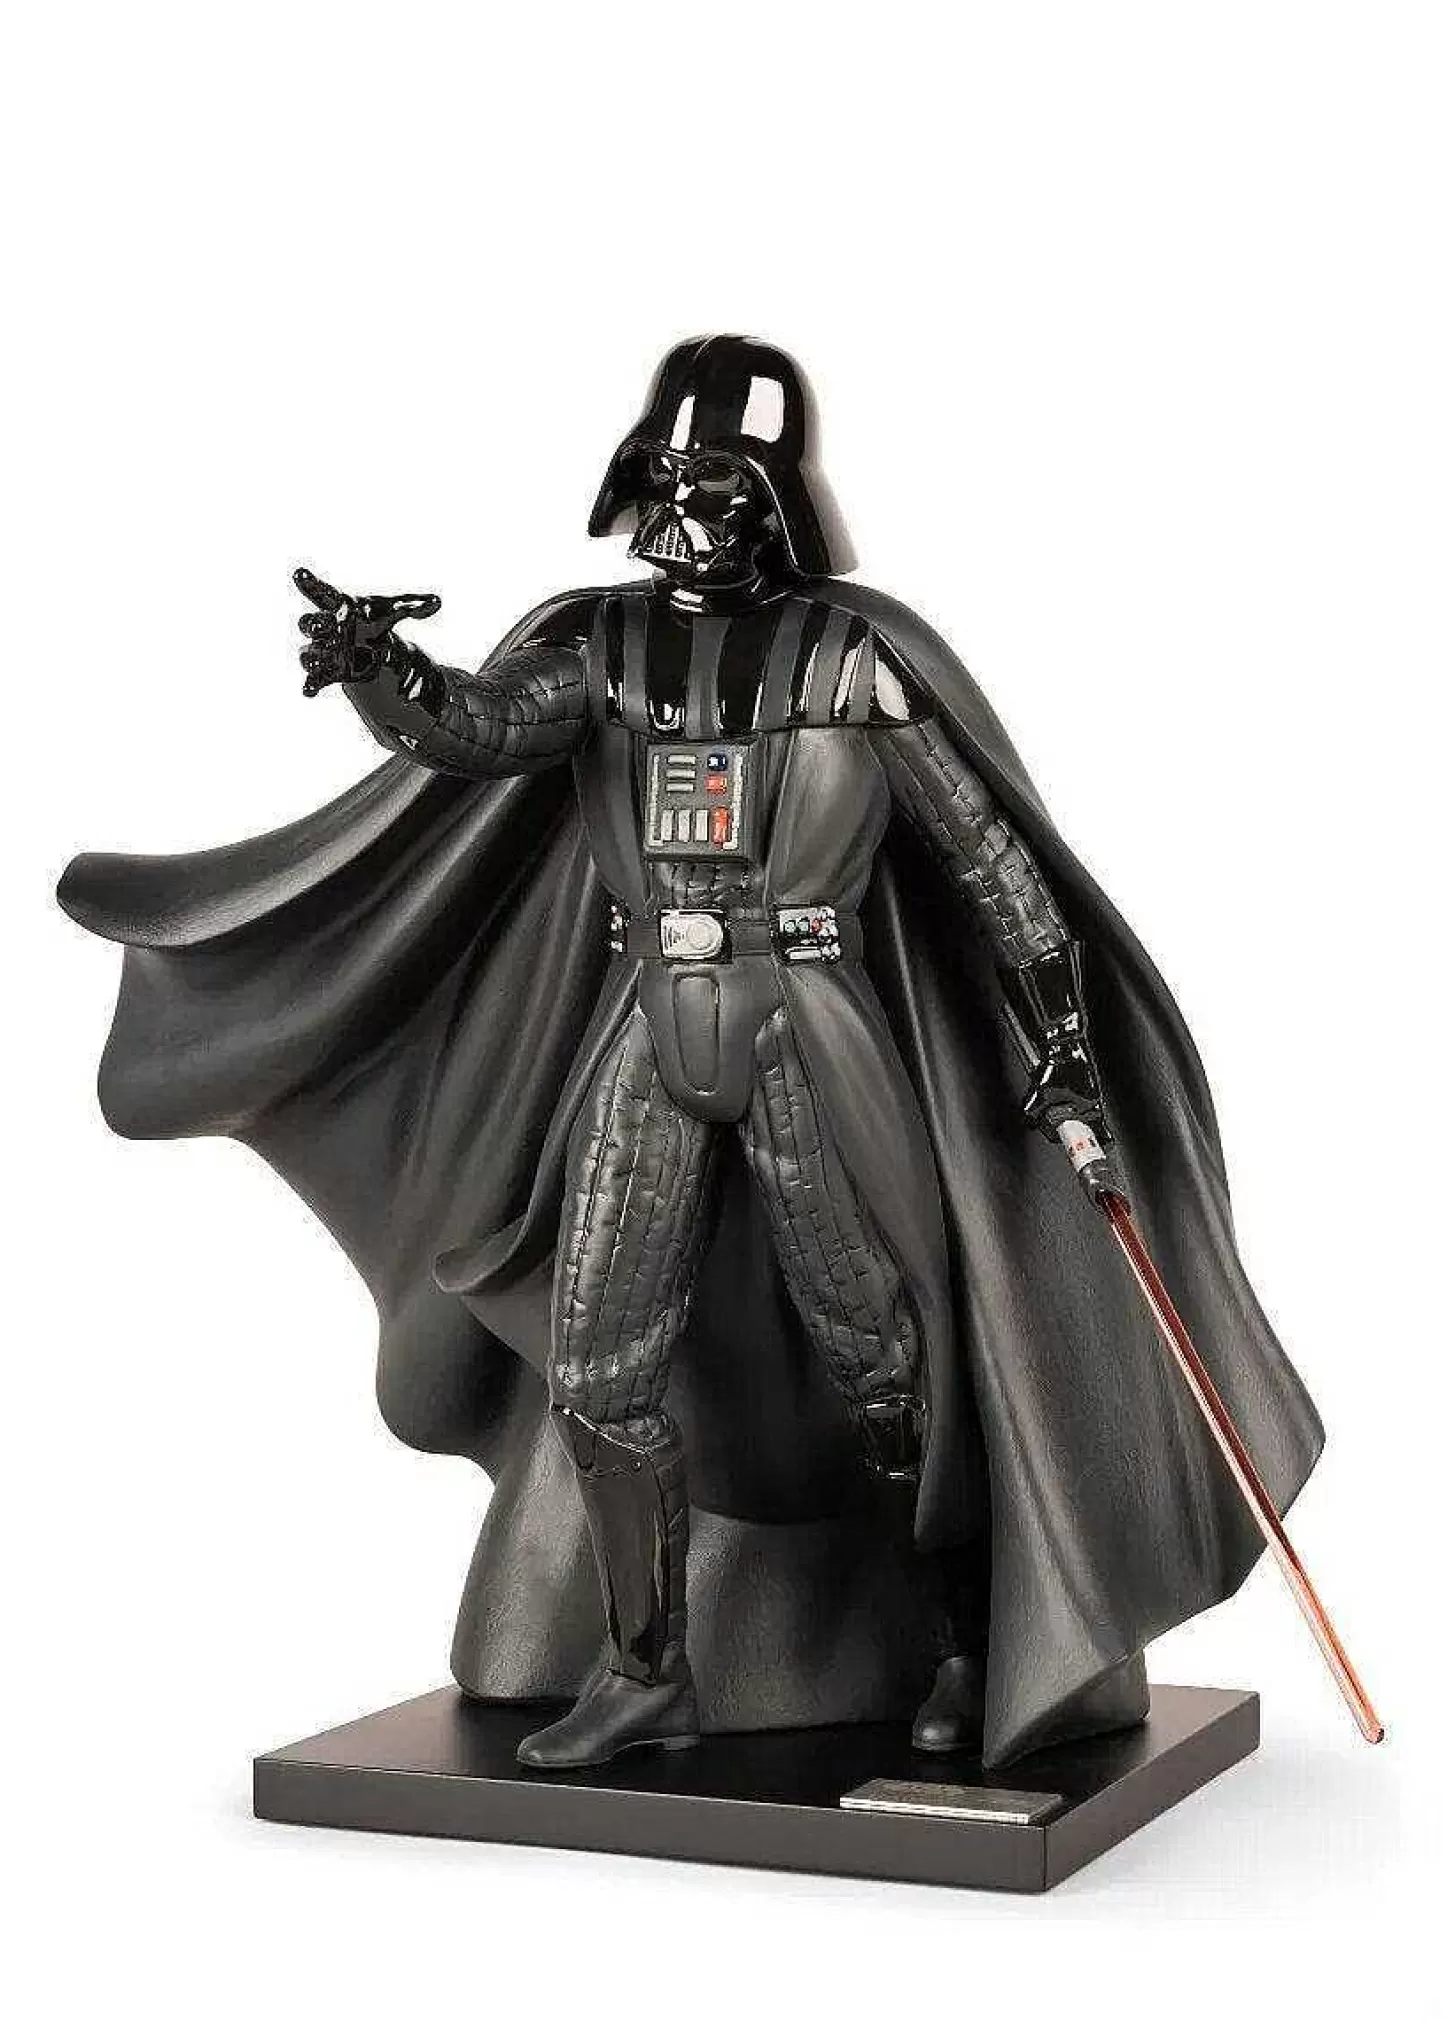 Lladró Darth Vader Sculpture. Limited Edition^ Star Wars